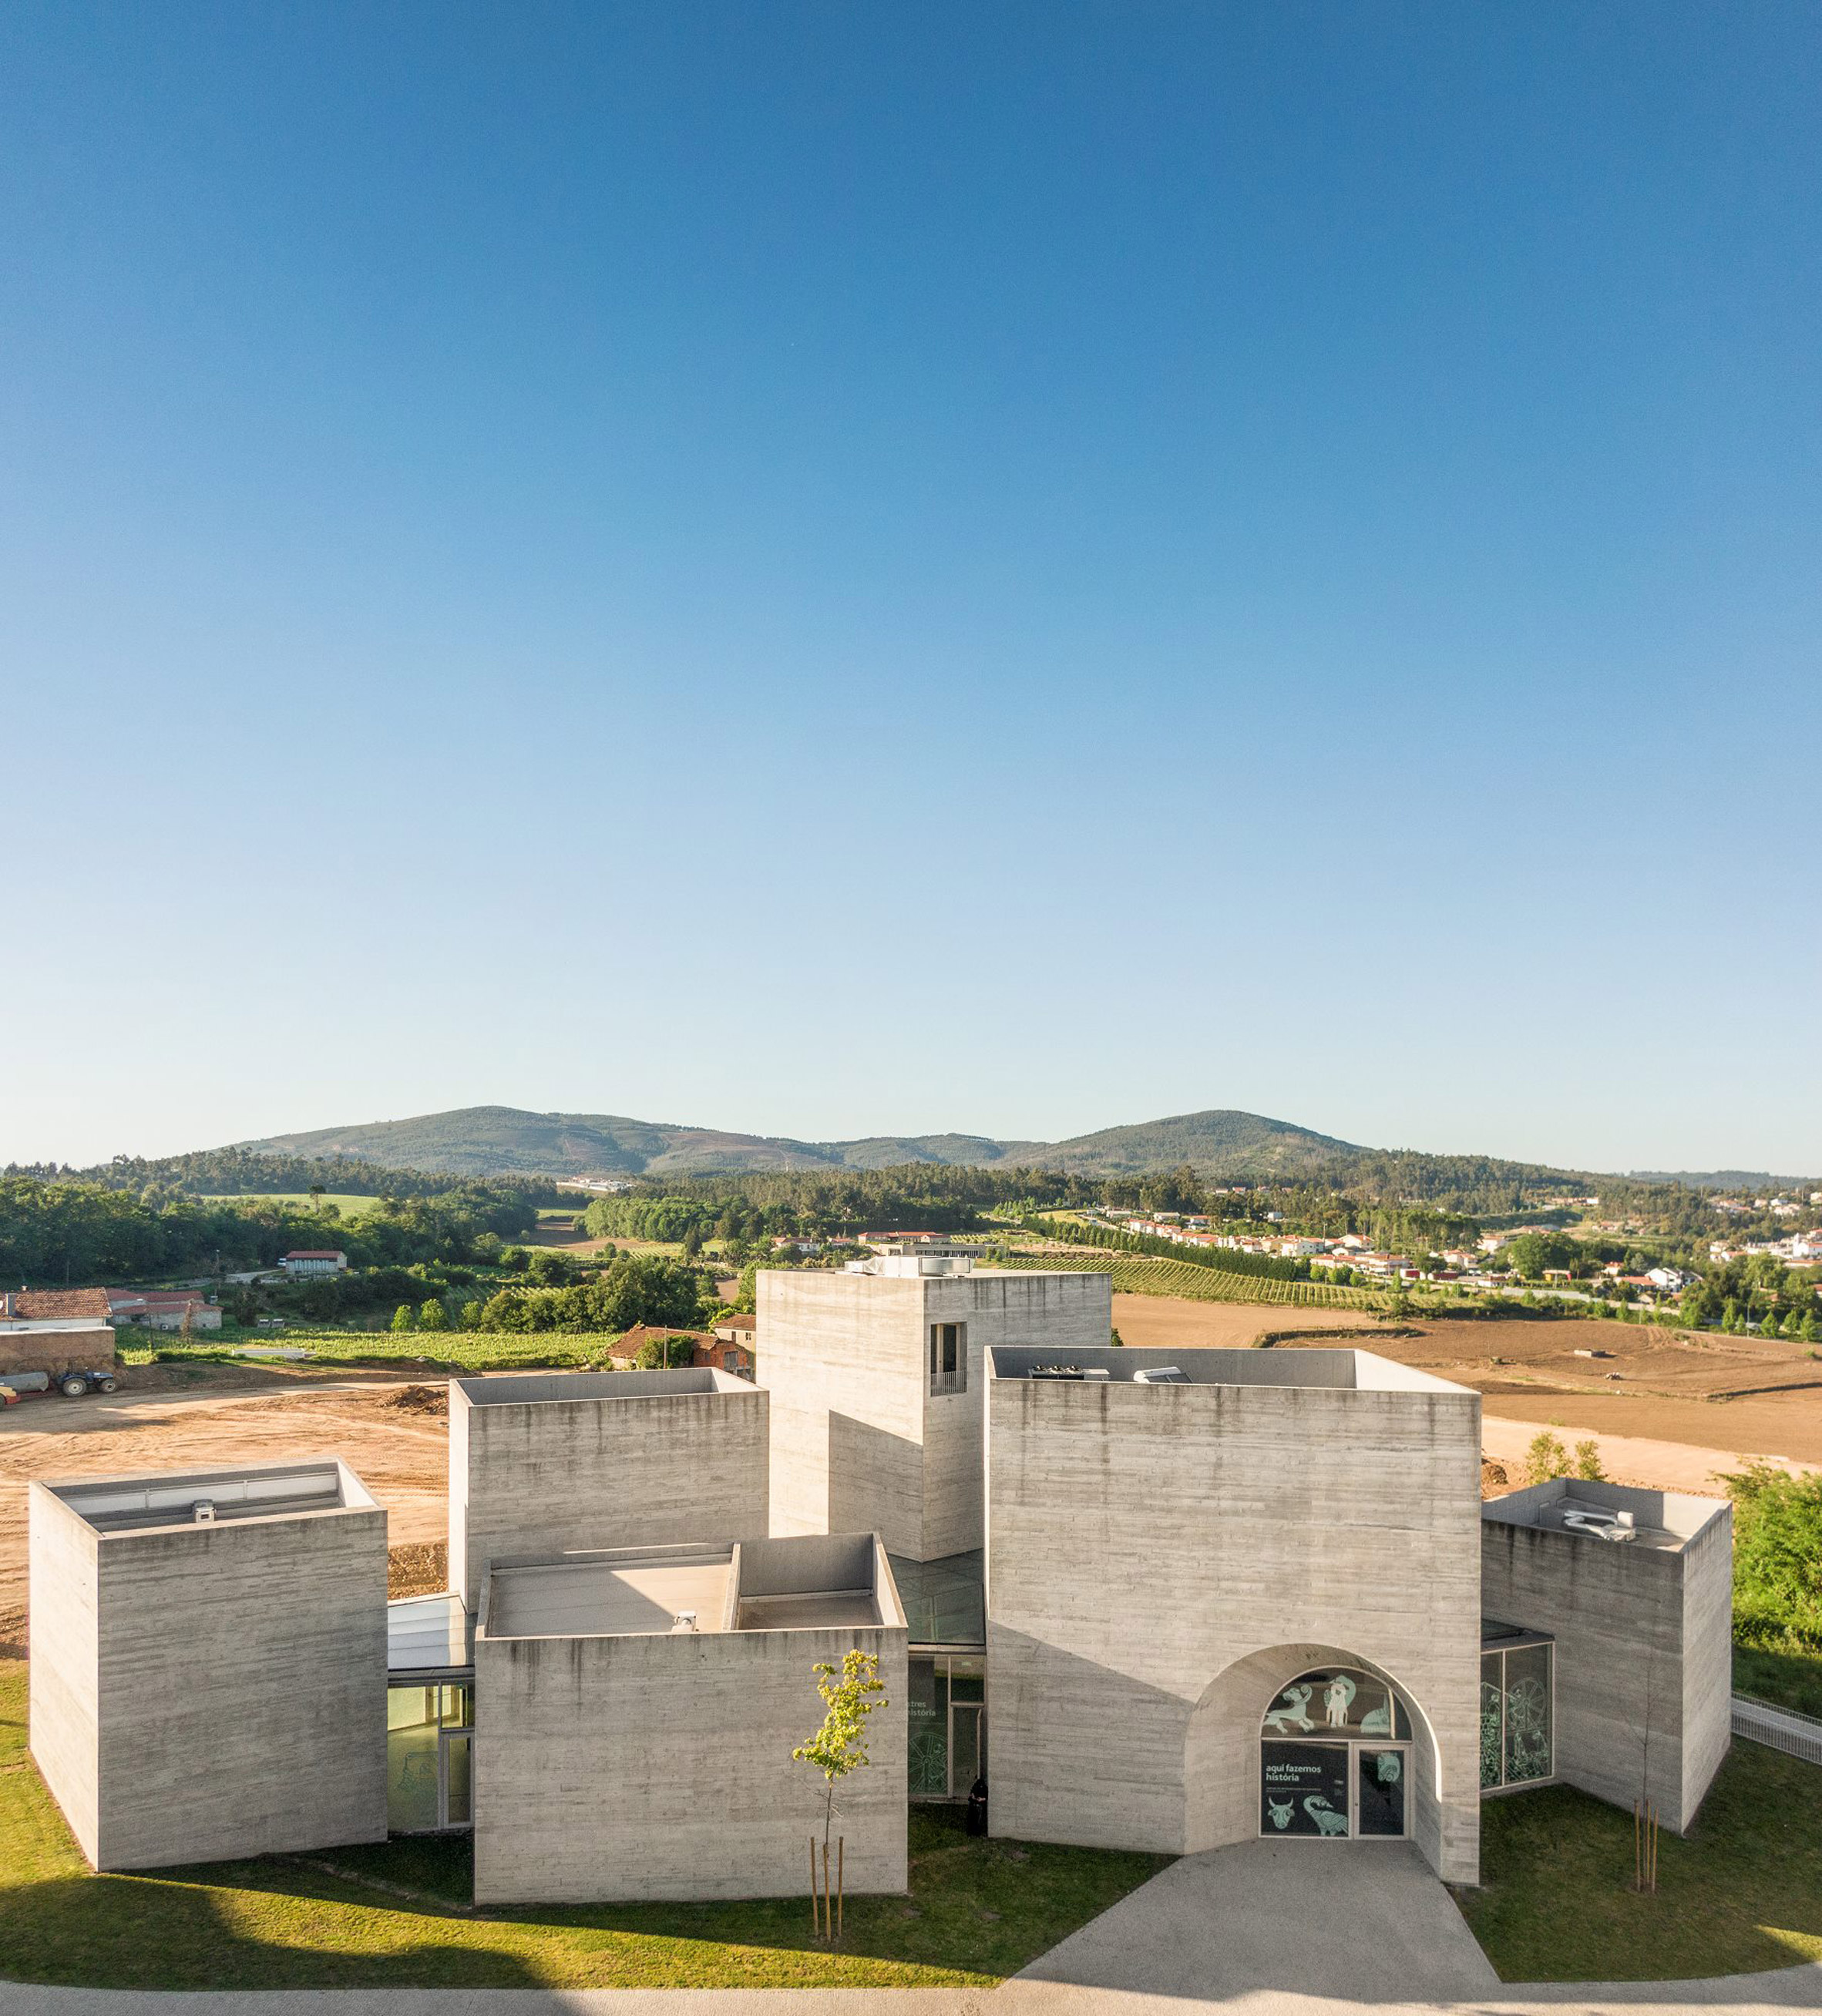 Centro de Interpretação do Românico, or Interpretation Center for the Romanesque, in Lousada, Portugal, by Spaceworkers 